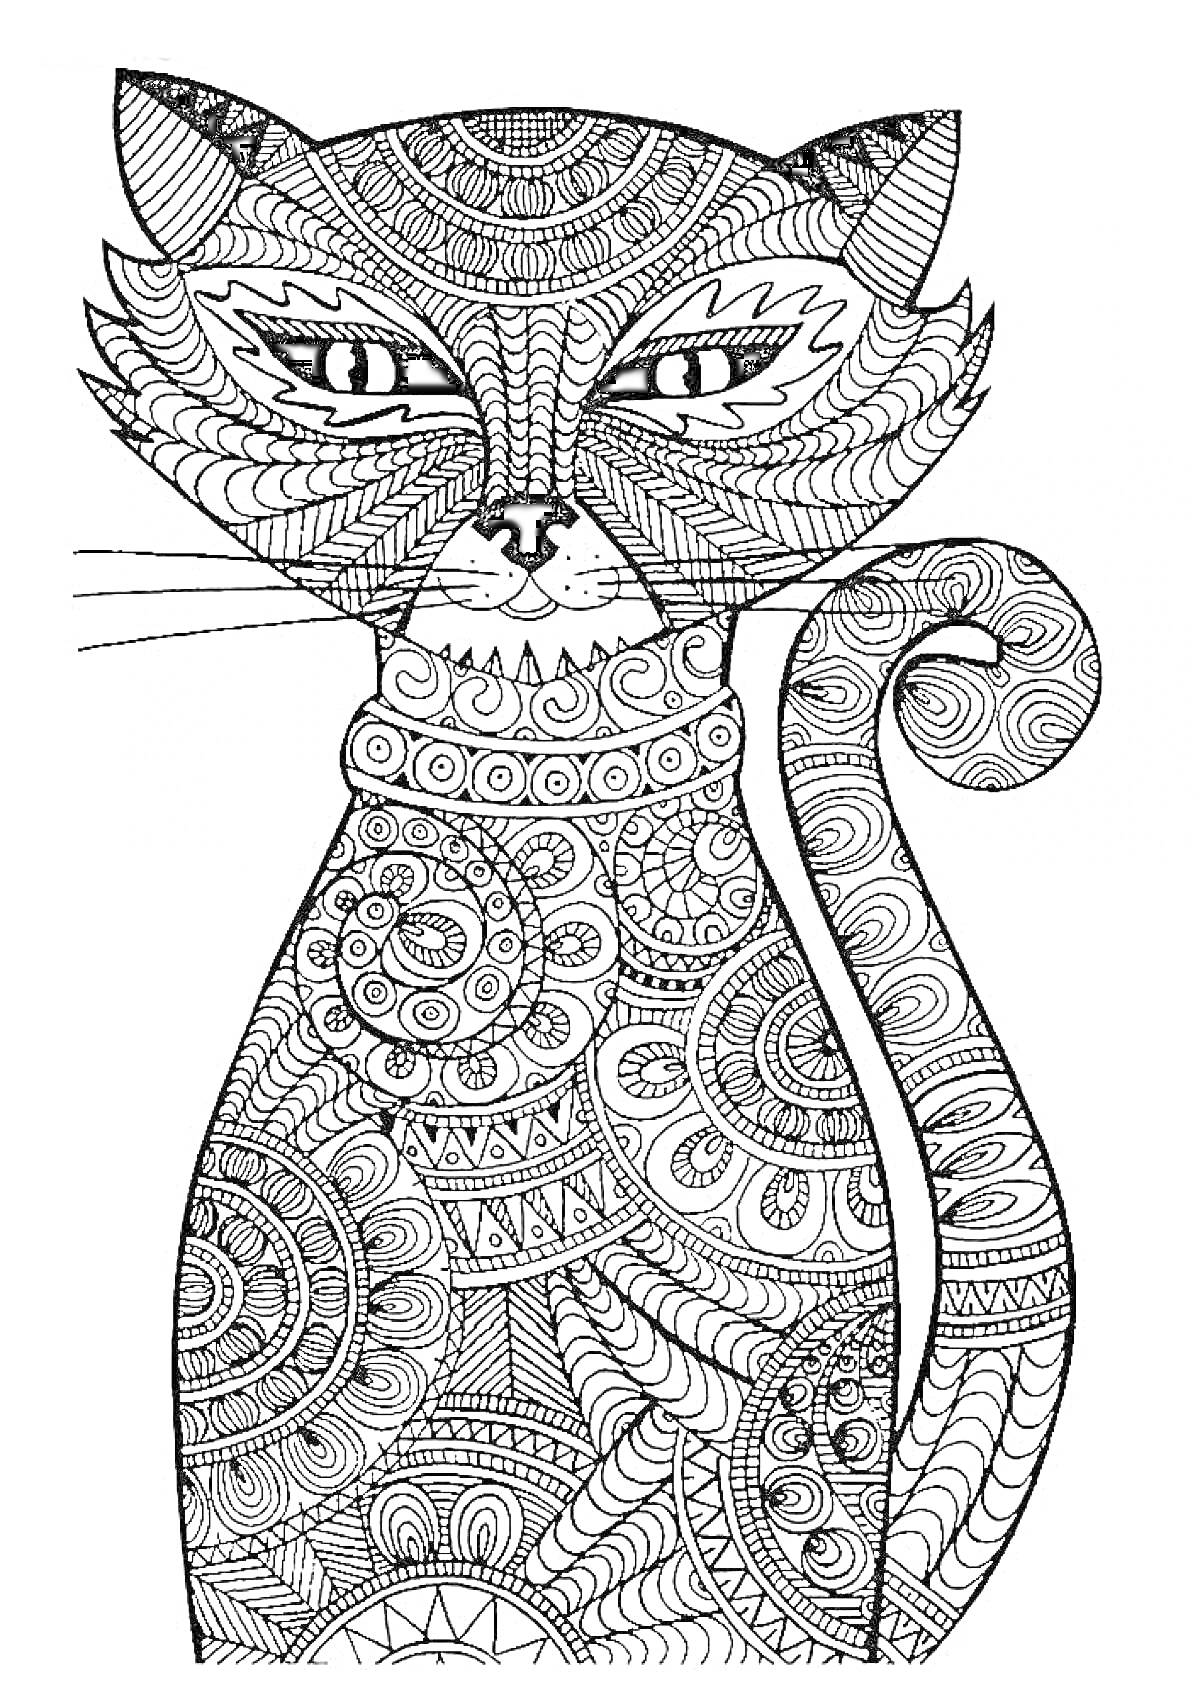 Раскраска Антистресс раскраска с кошкой, узоры и мандалы, завитки и геометрические фигуры